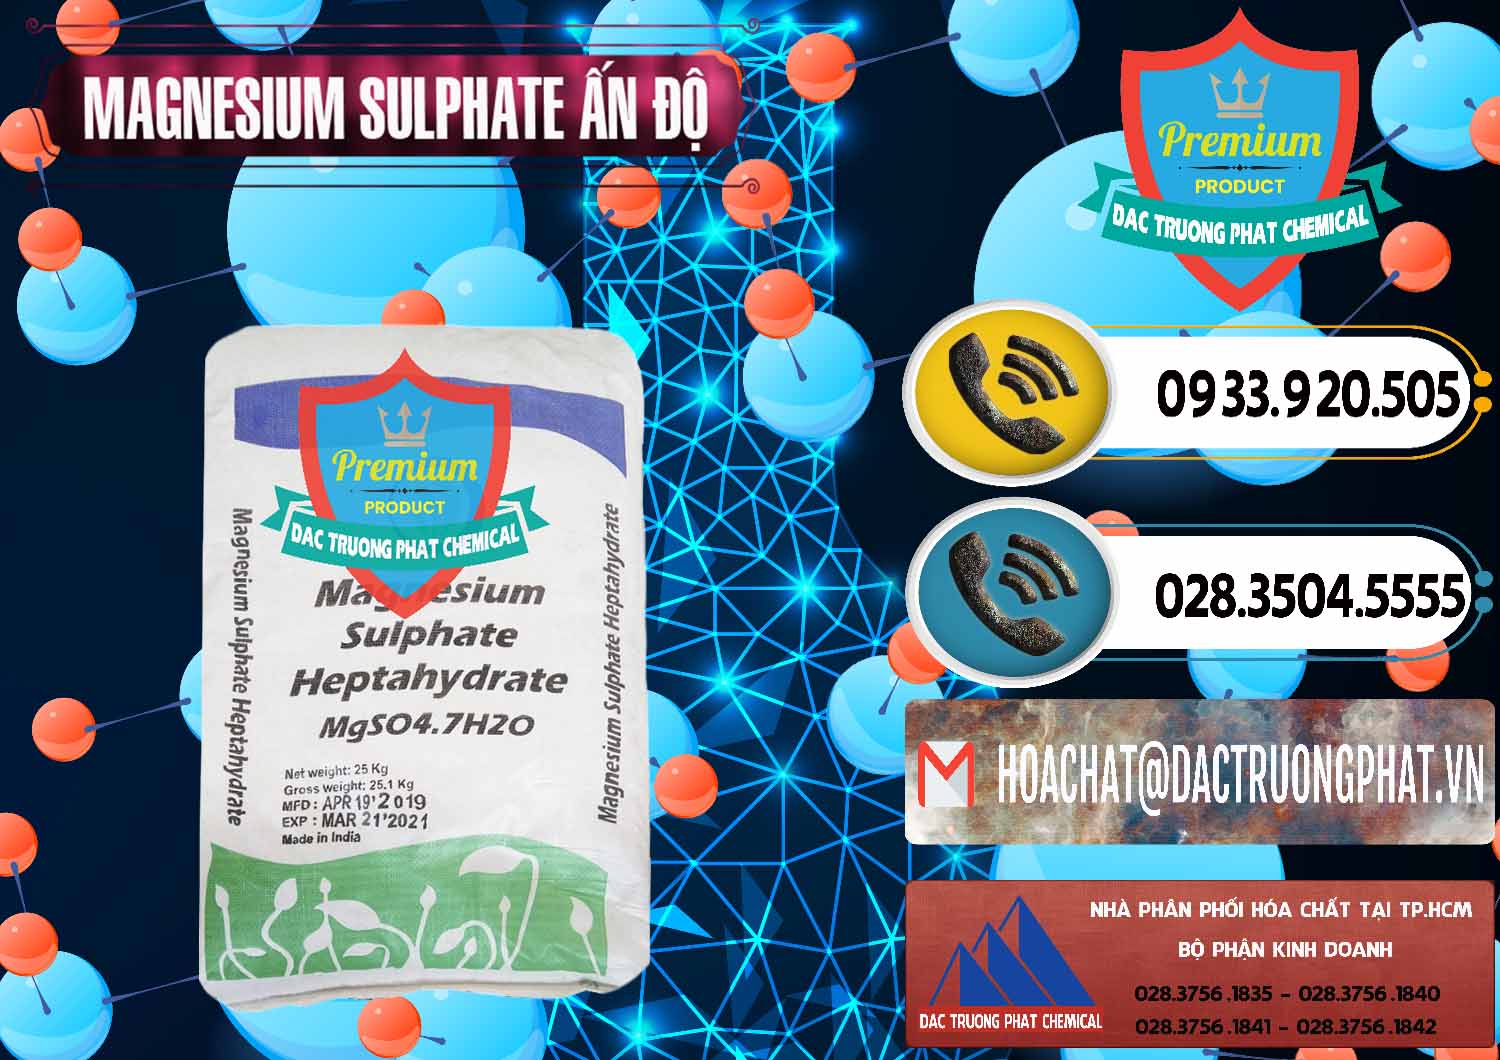 Cty bán & cung ứng MGSO4.7H2O – Magnesium Sulphate Heptahydrate Ấn Độ India - 0362 - Phân phối ( cung ứng ) hóa chất tại TP.HCM - hoachatdetnhuom.vn